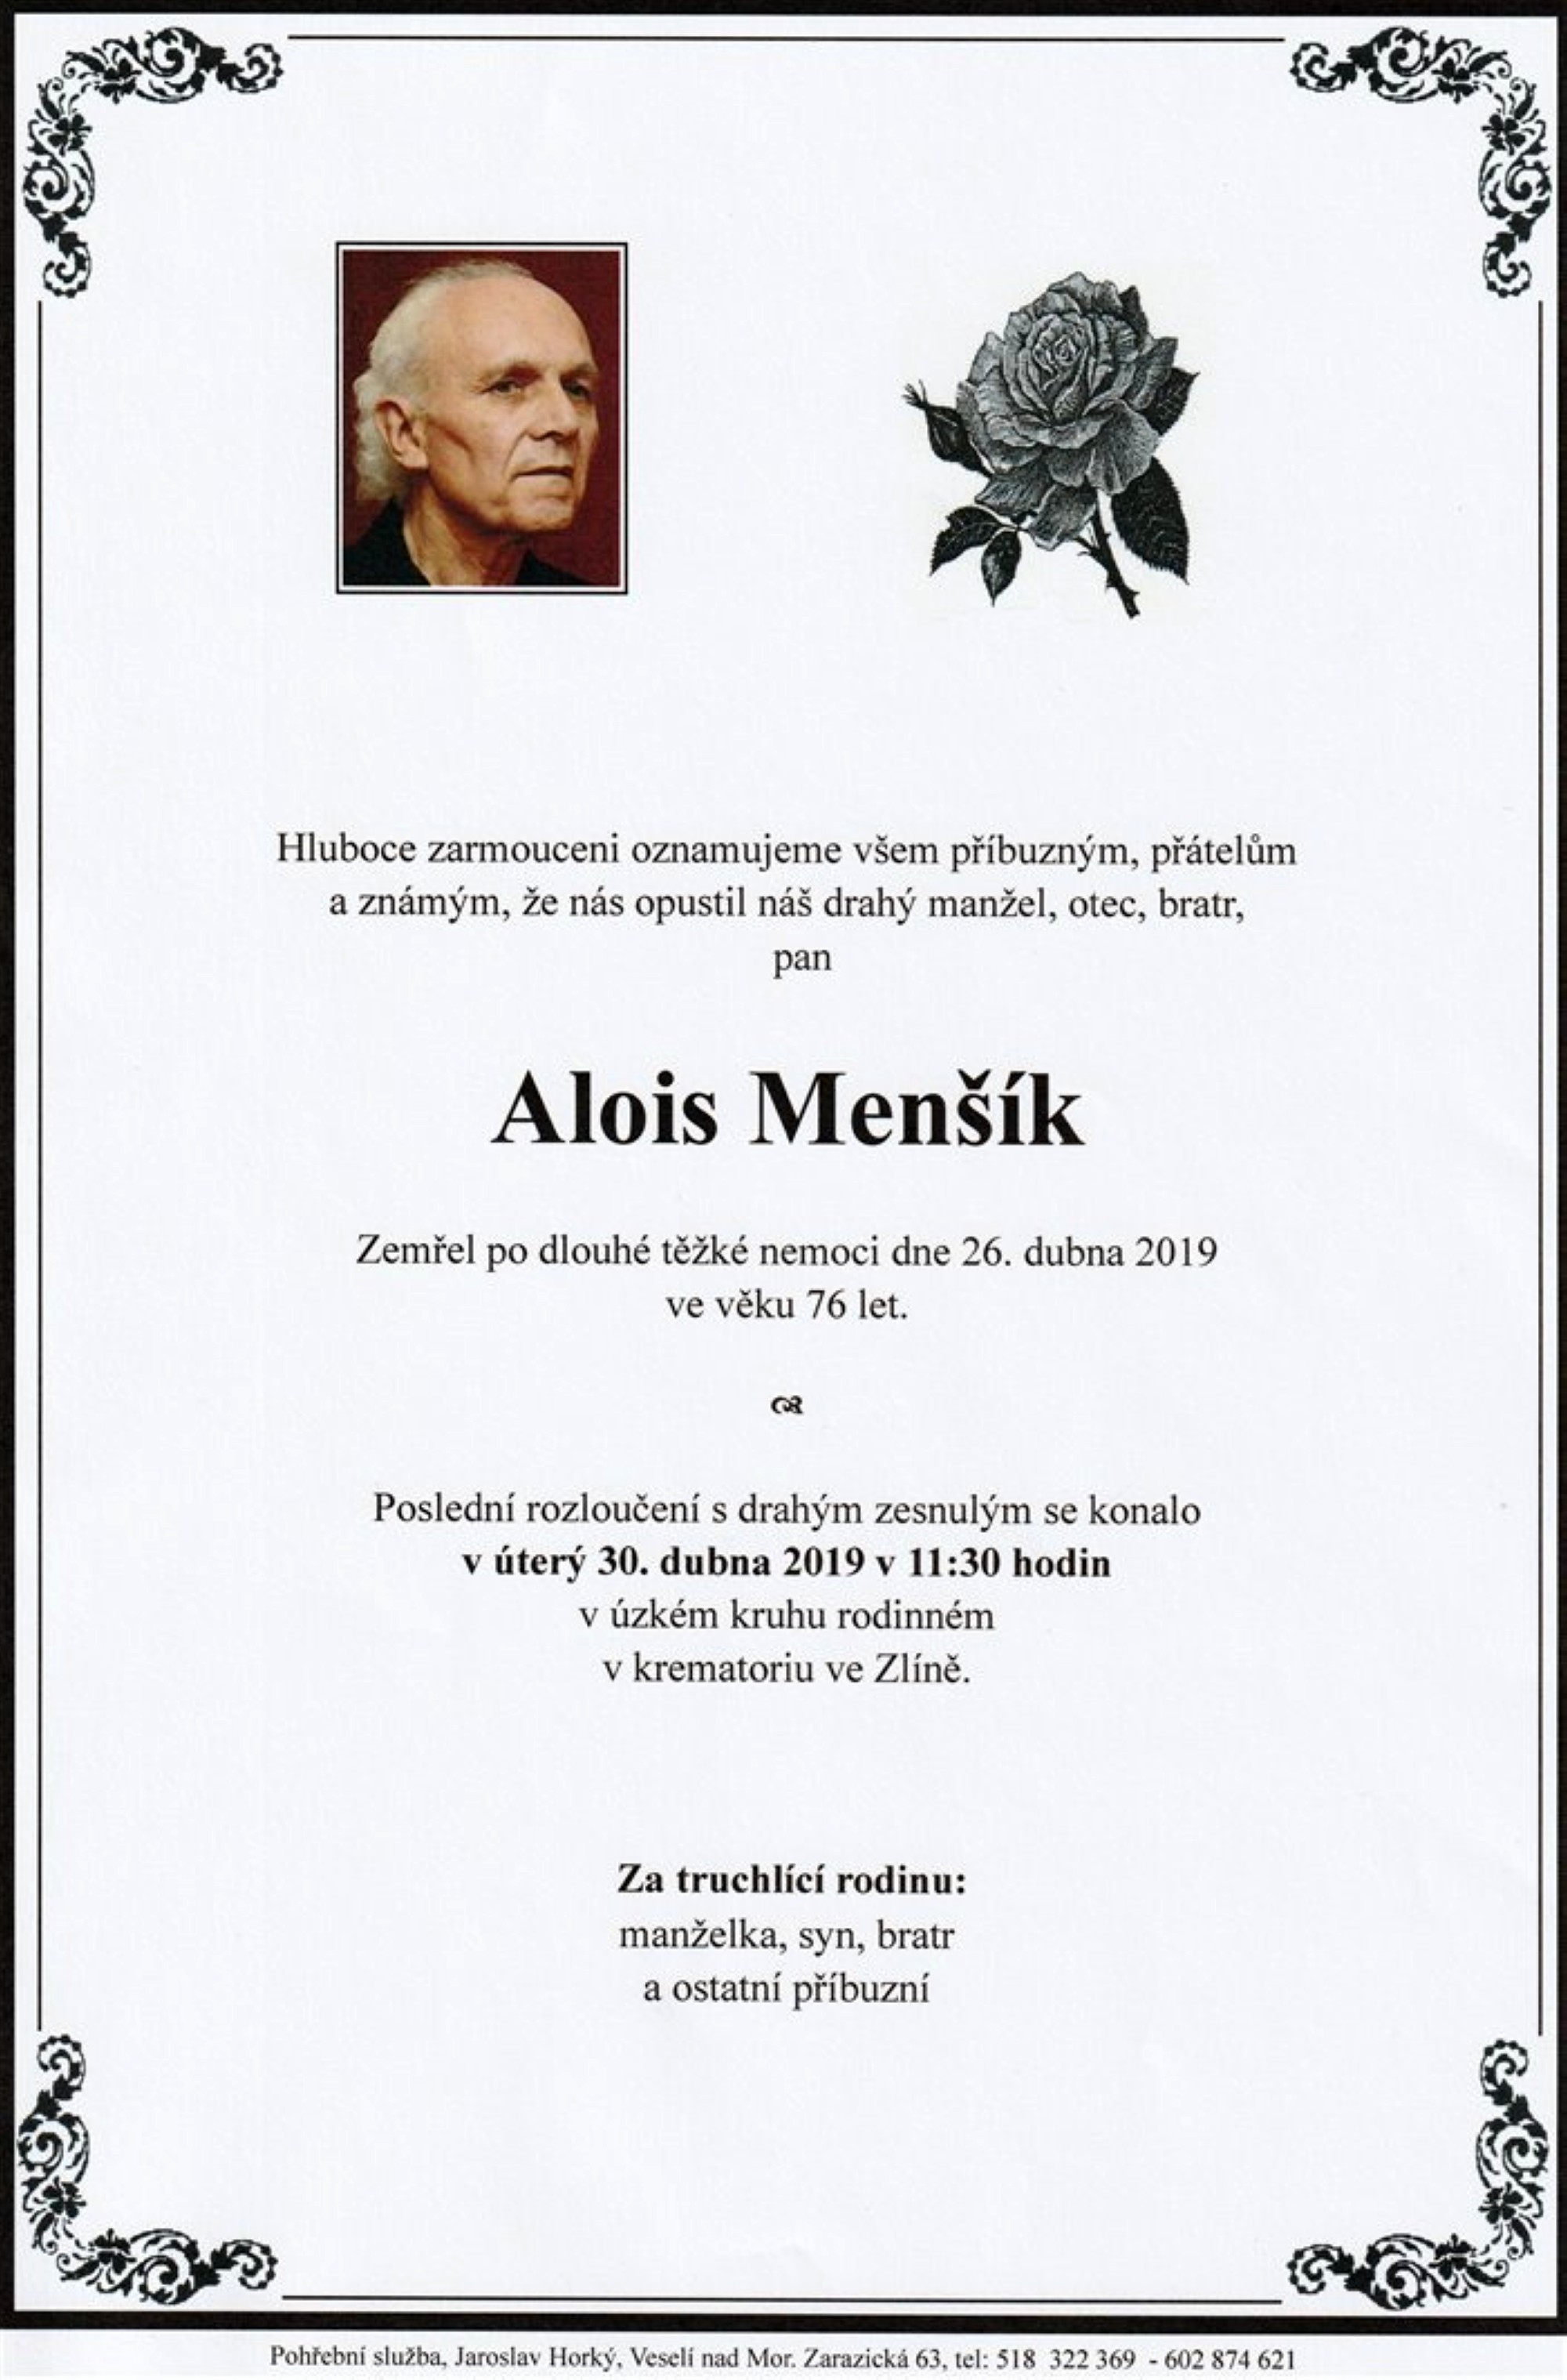 Alois Menšík